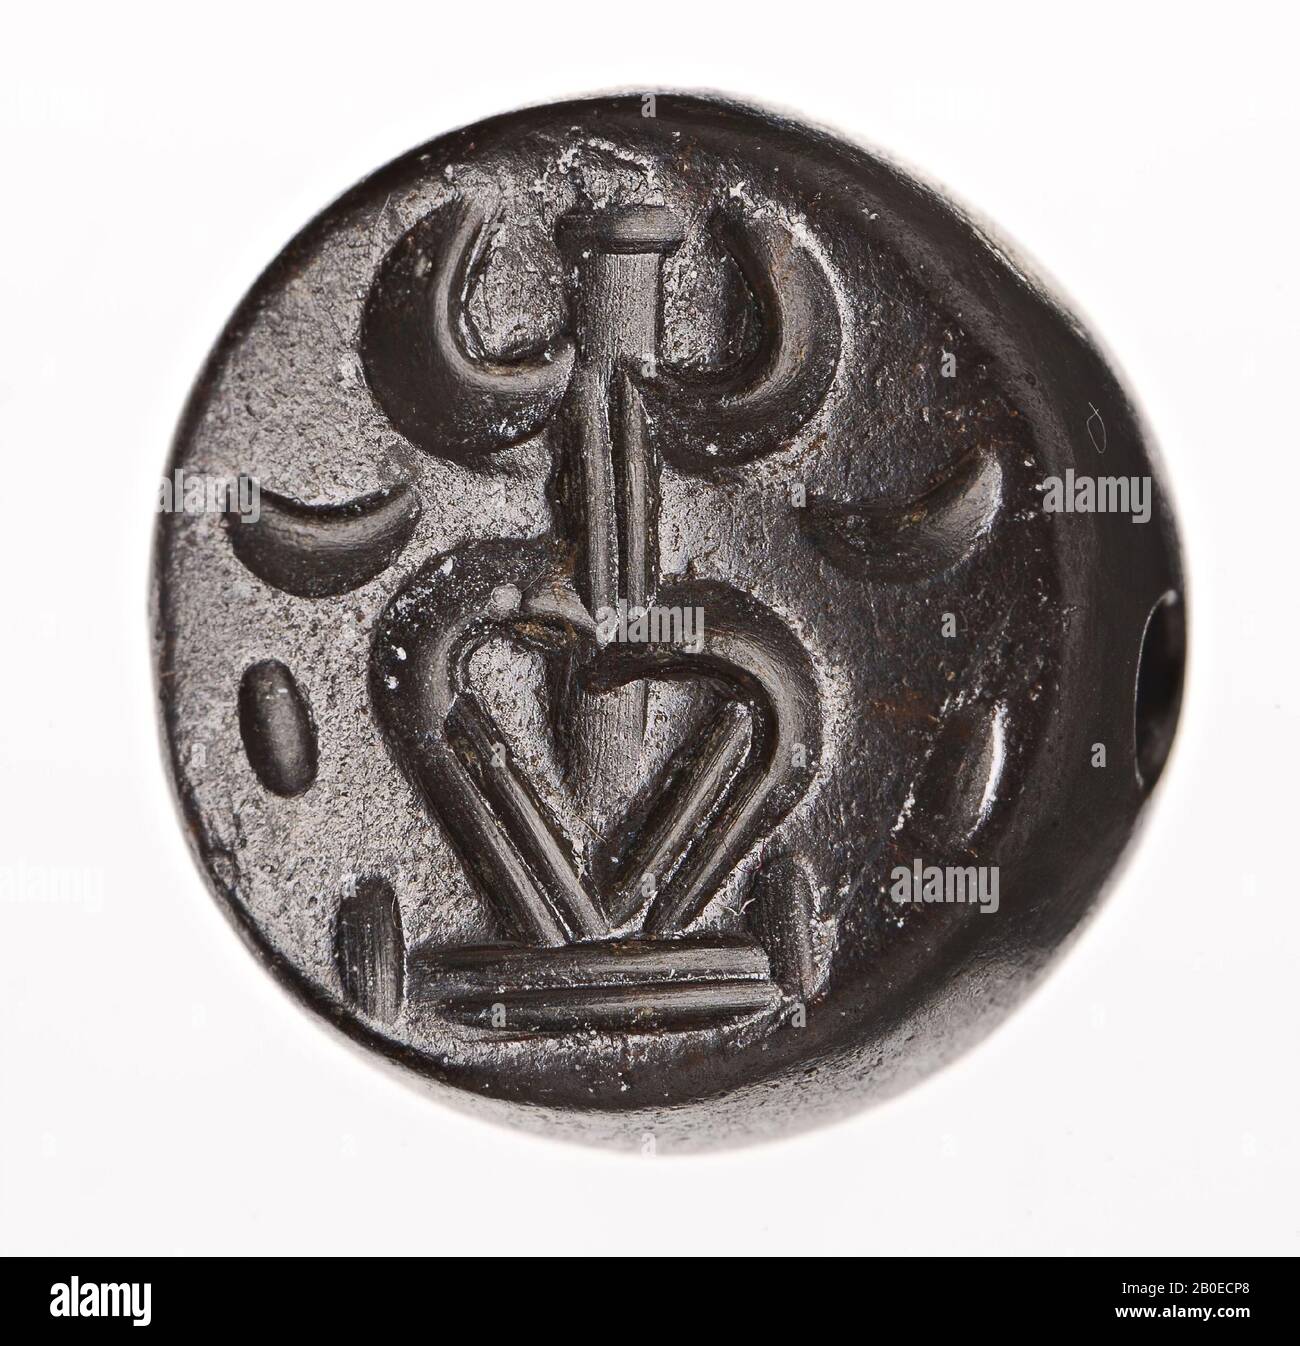 Un cachet en pierre avec une image d'une personne stylisée., Seal, Stone, hématite, D 1,6 cm, Iran Banque D'Images